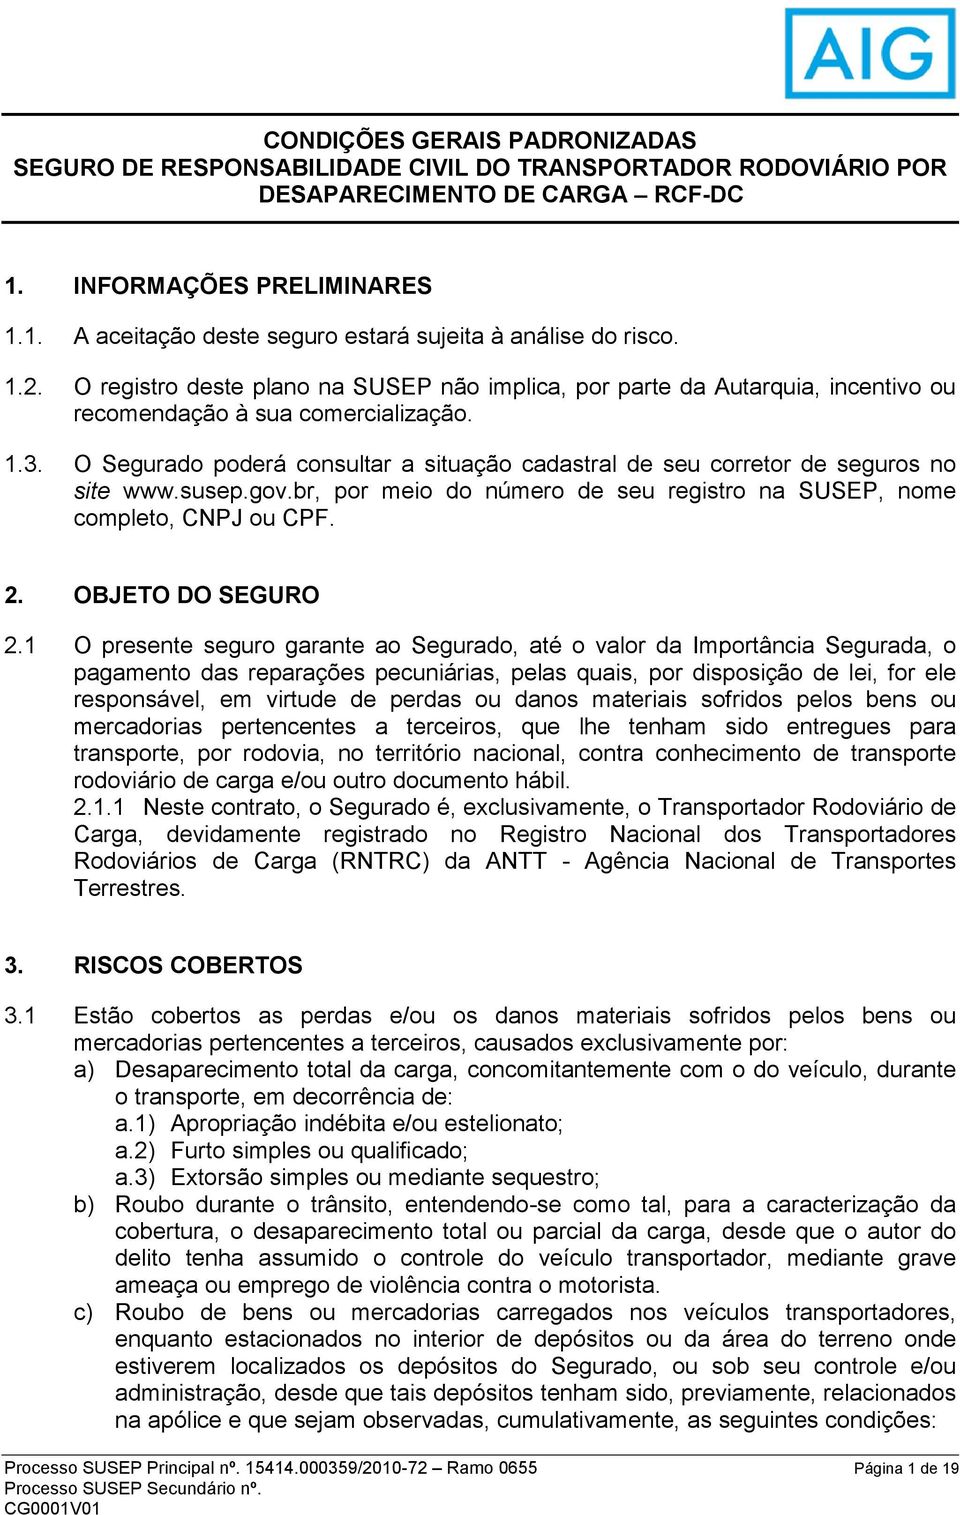 O Segurado poderá consultar a situação cadastral de seu corretor de seguros no site www.susep.gov.br, por meio do número de seu registro na SUSEP, nome completo, CNPJ ou CPF. 2. OBJETO DO SEGURO 2.